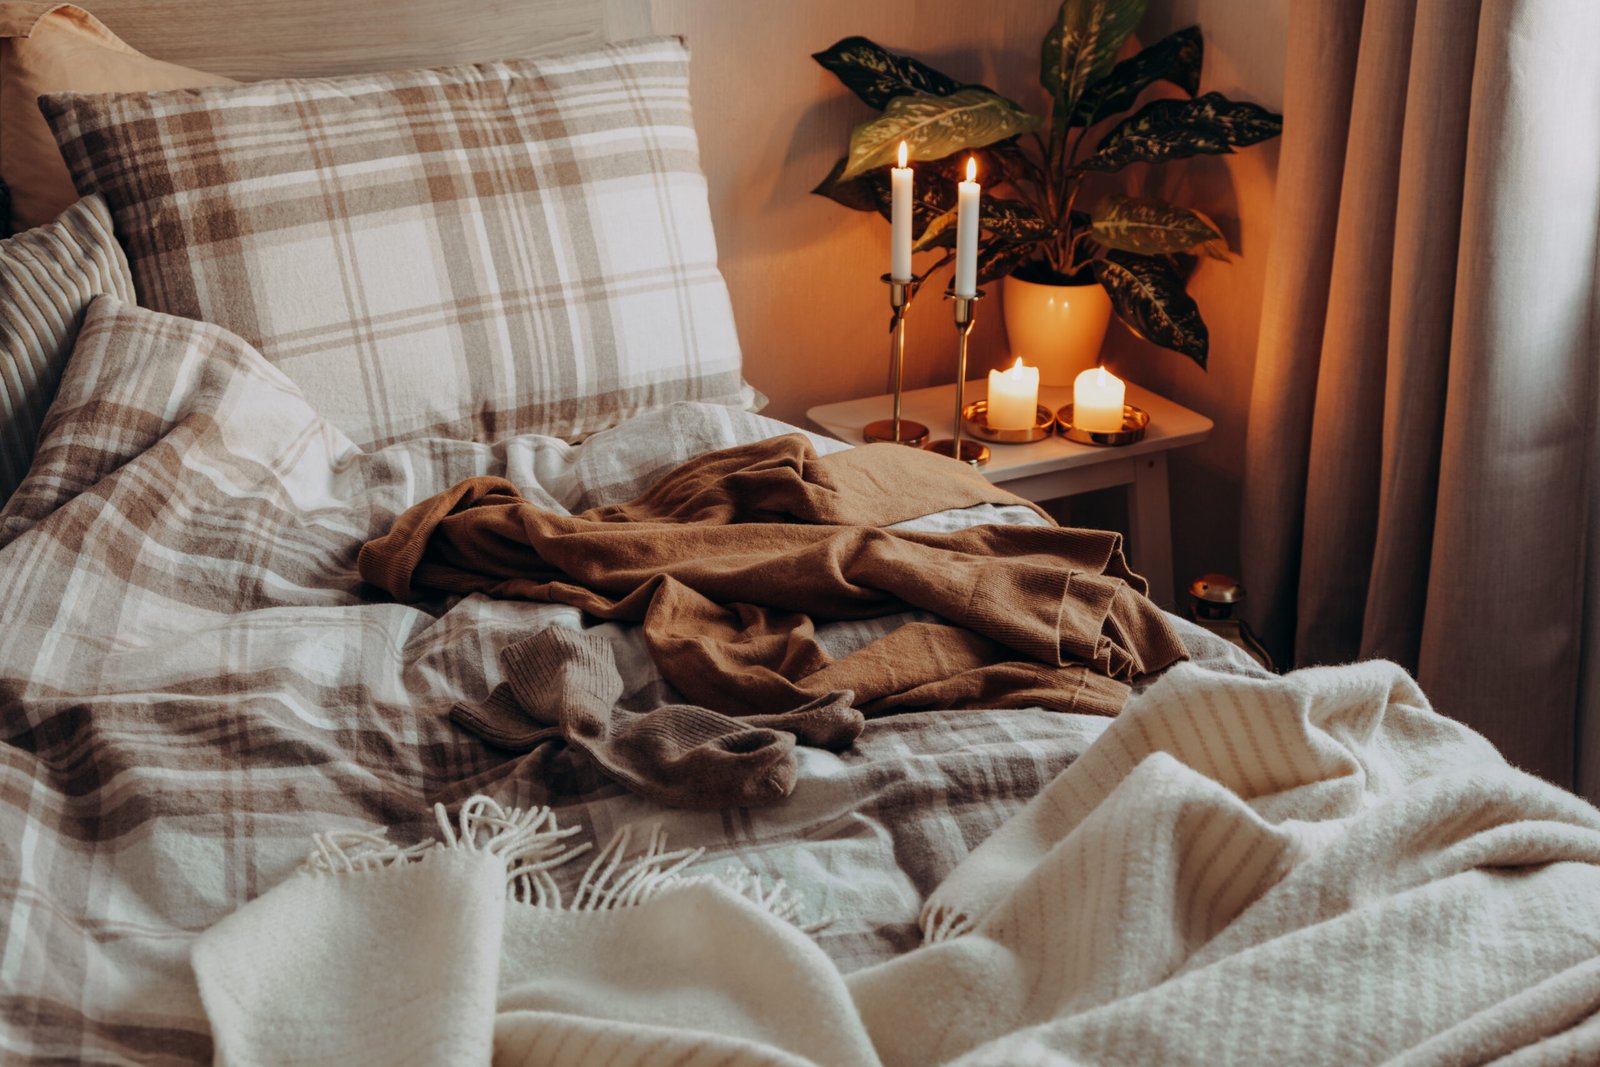 Cozy Scandinavian bedroom interior in natural tones.